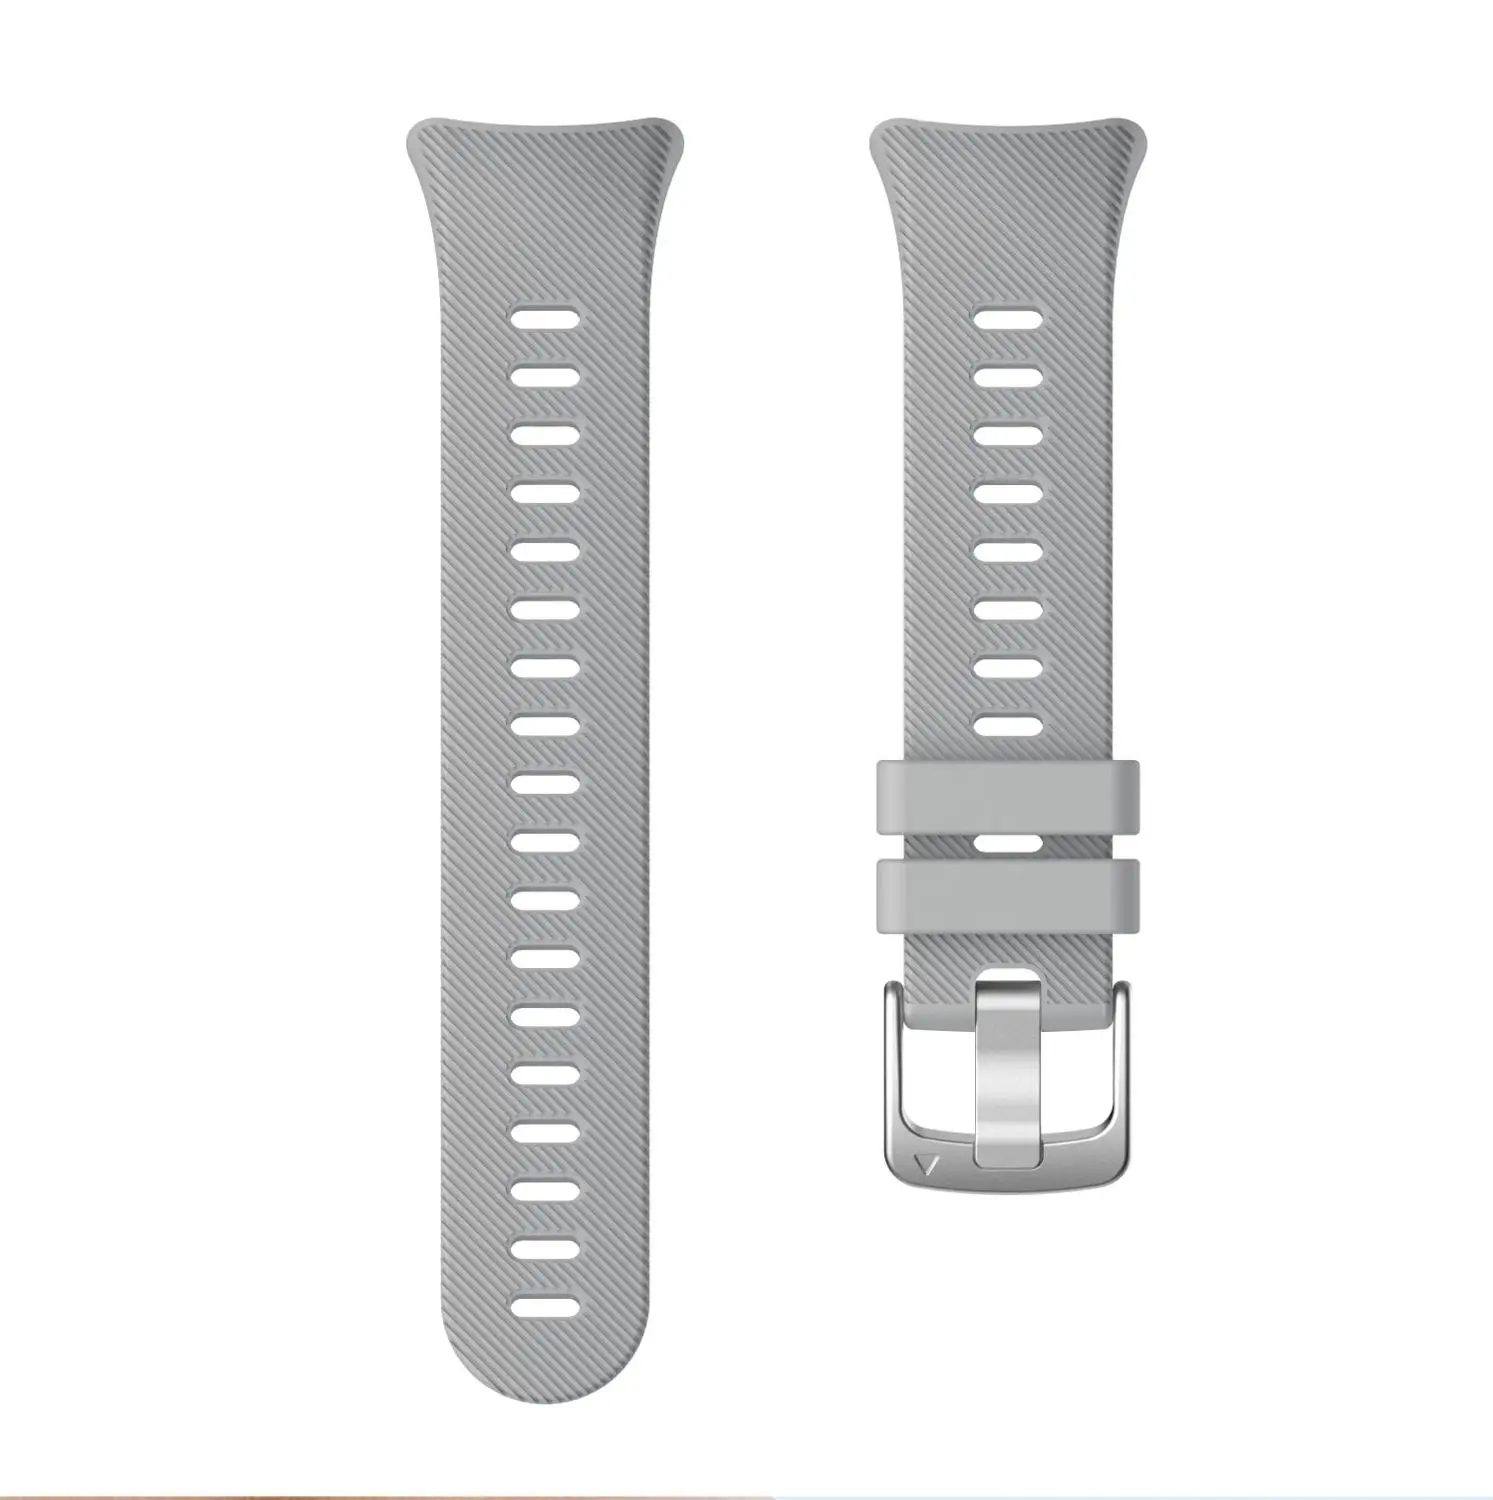 Сменный ремешок для часов Garmin Forerunner 45/45 S смарт-часы ремешок силиконовый ремешок для часов Garmin Forerunner 45 45S браслет - Цвет ремешка: Gray